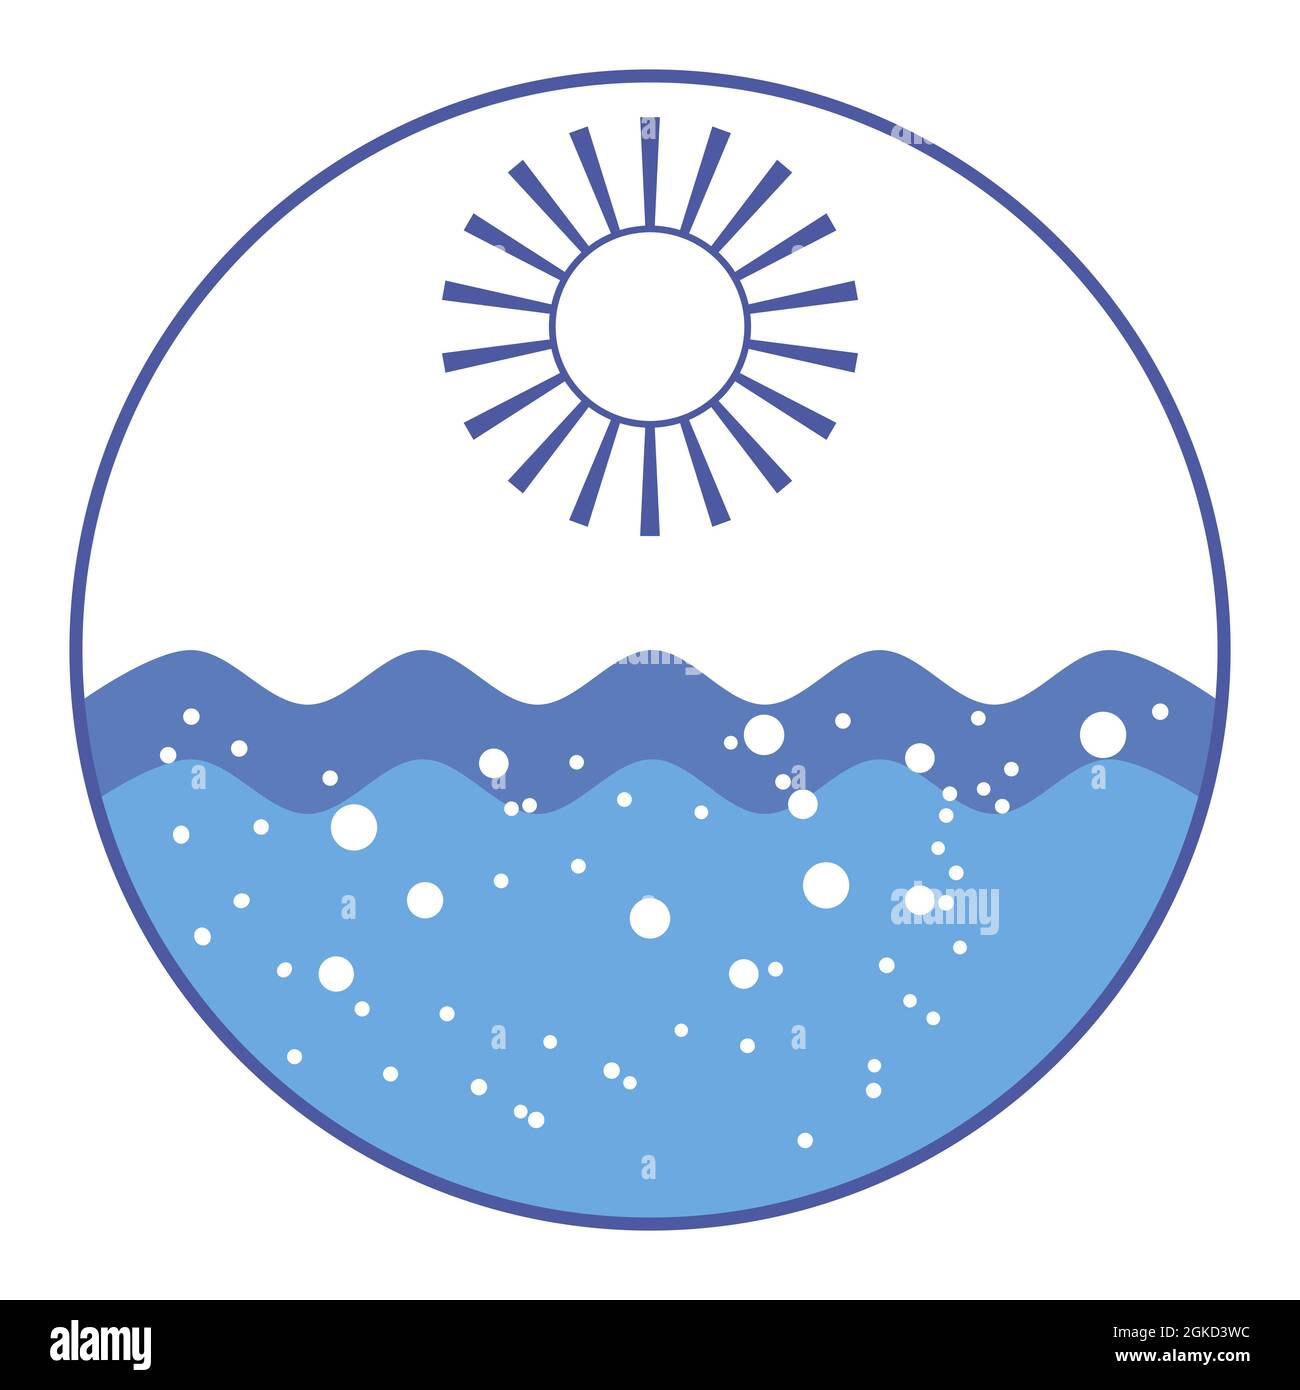 Rundes Marine-Logo. Sonne mit Strahlen scheint über dem Meer. Blaue Ozeanwellen plätschern. Wellen tragen Traurigkeit weg. Luftblasen steigen durch Wasser auf. Sea Waiting f Stock Vektor